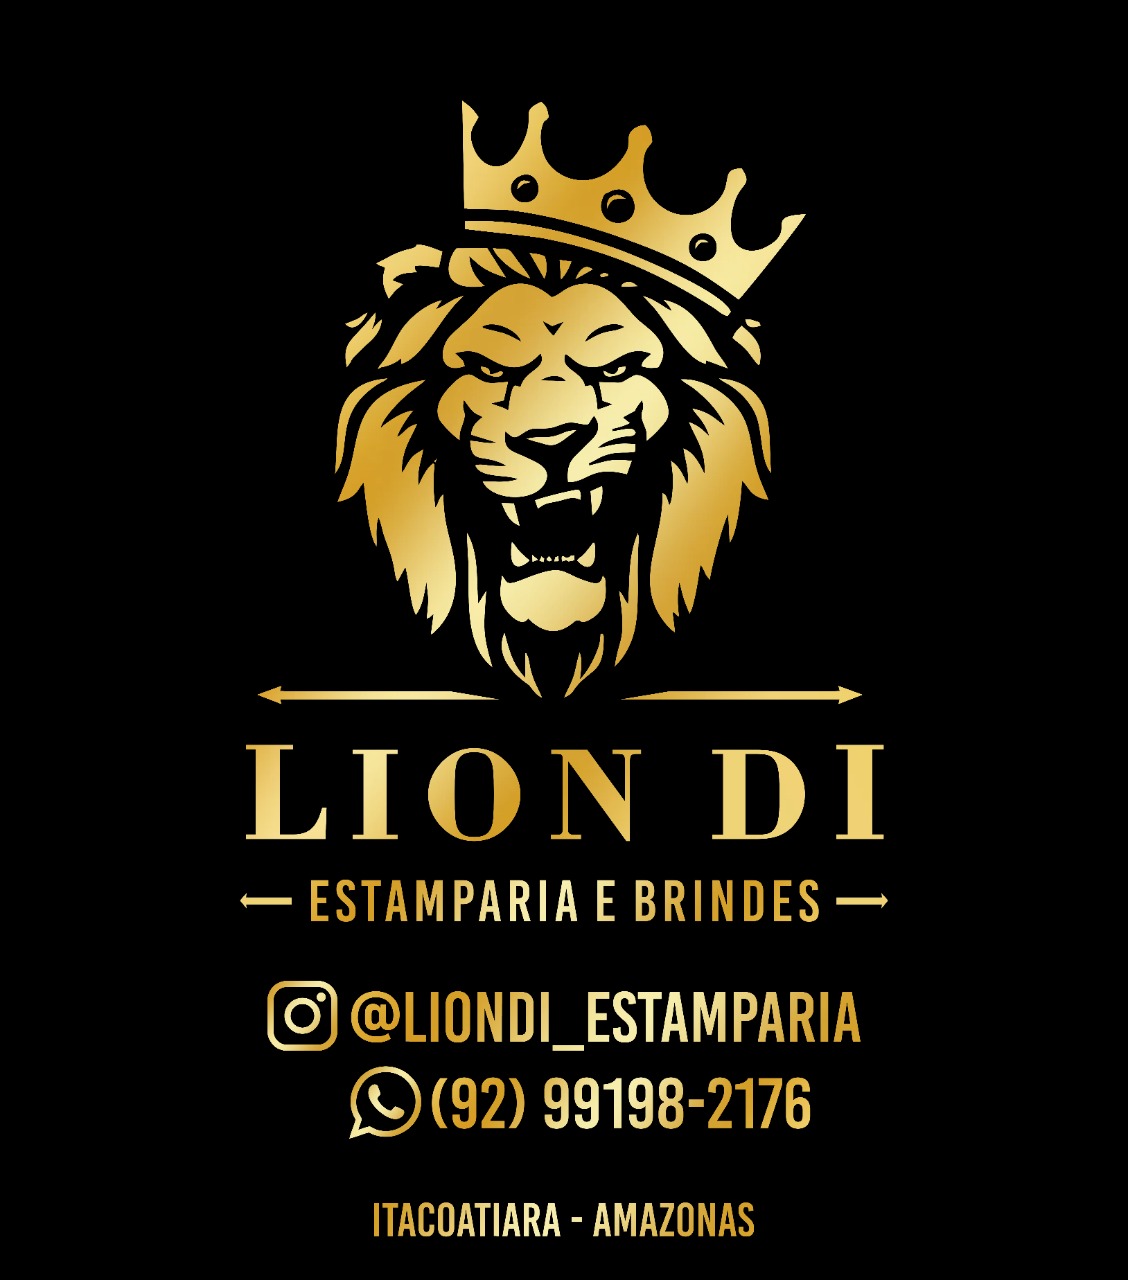 Lion DI